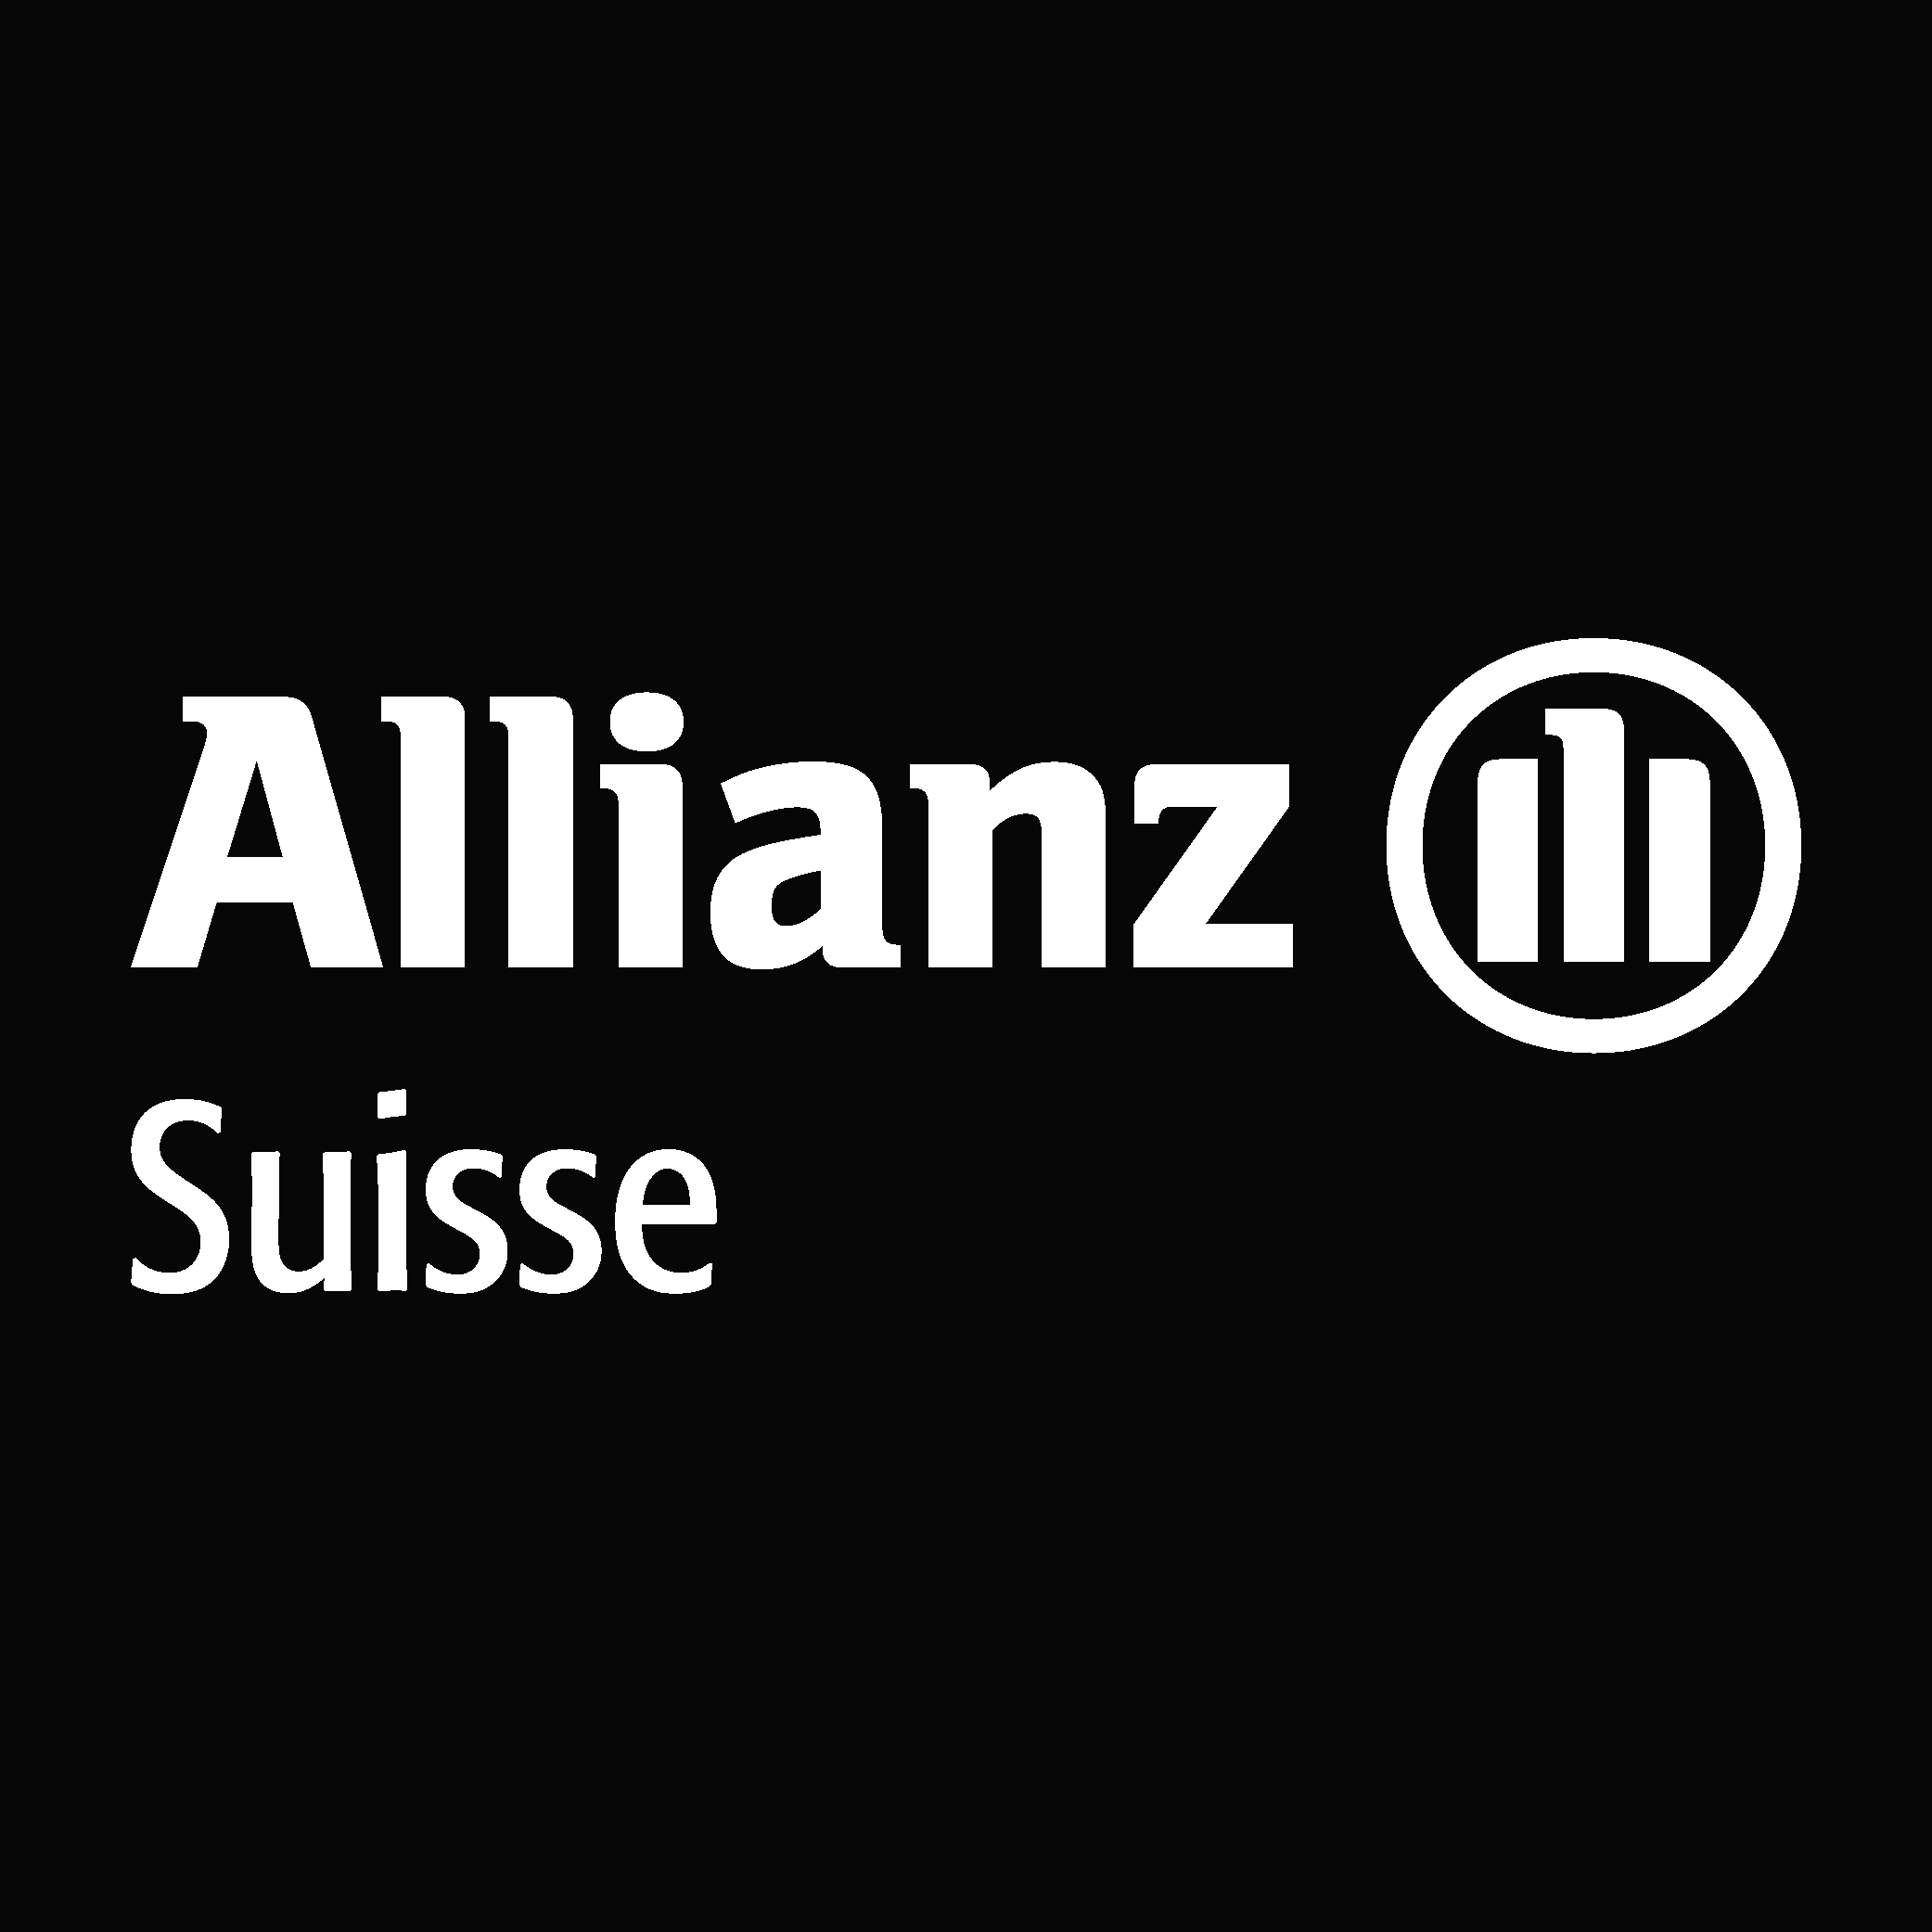 Allianz suisse white Logo Vector